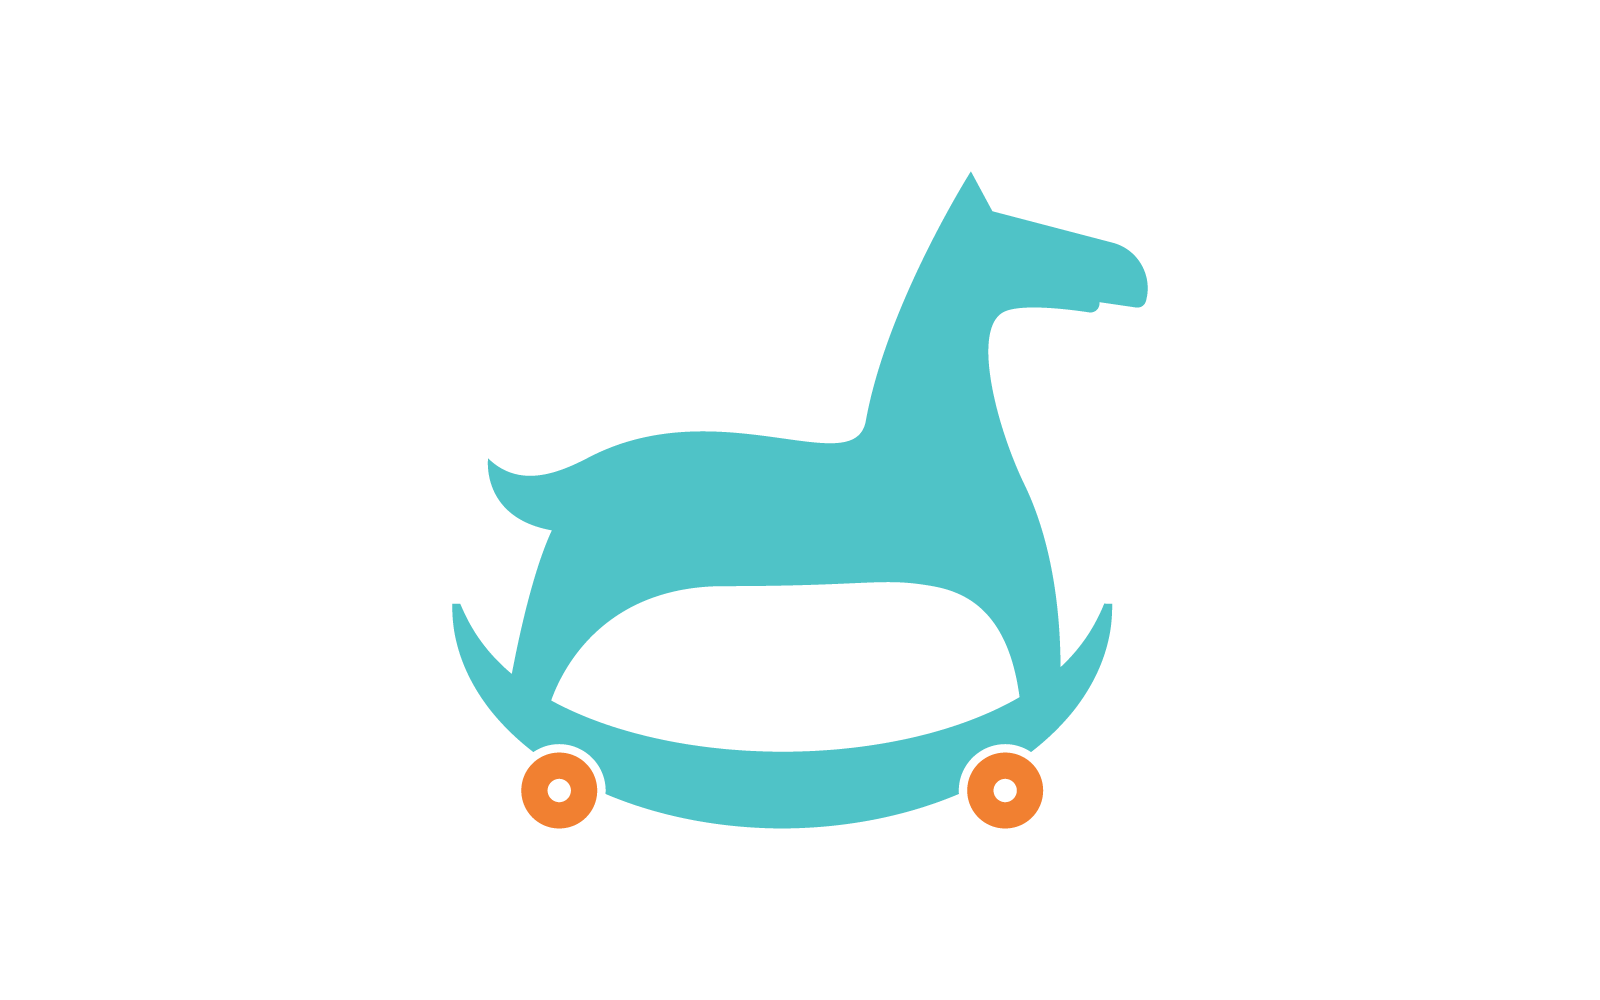 Cavallo a dondolo giocattolo bambini negozio logo vettoriale design piatto